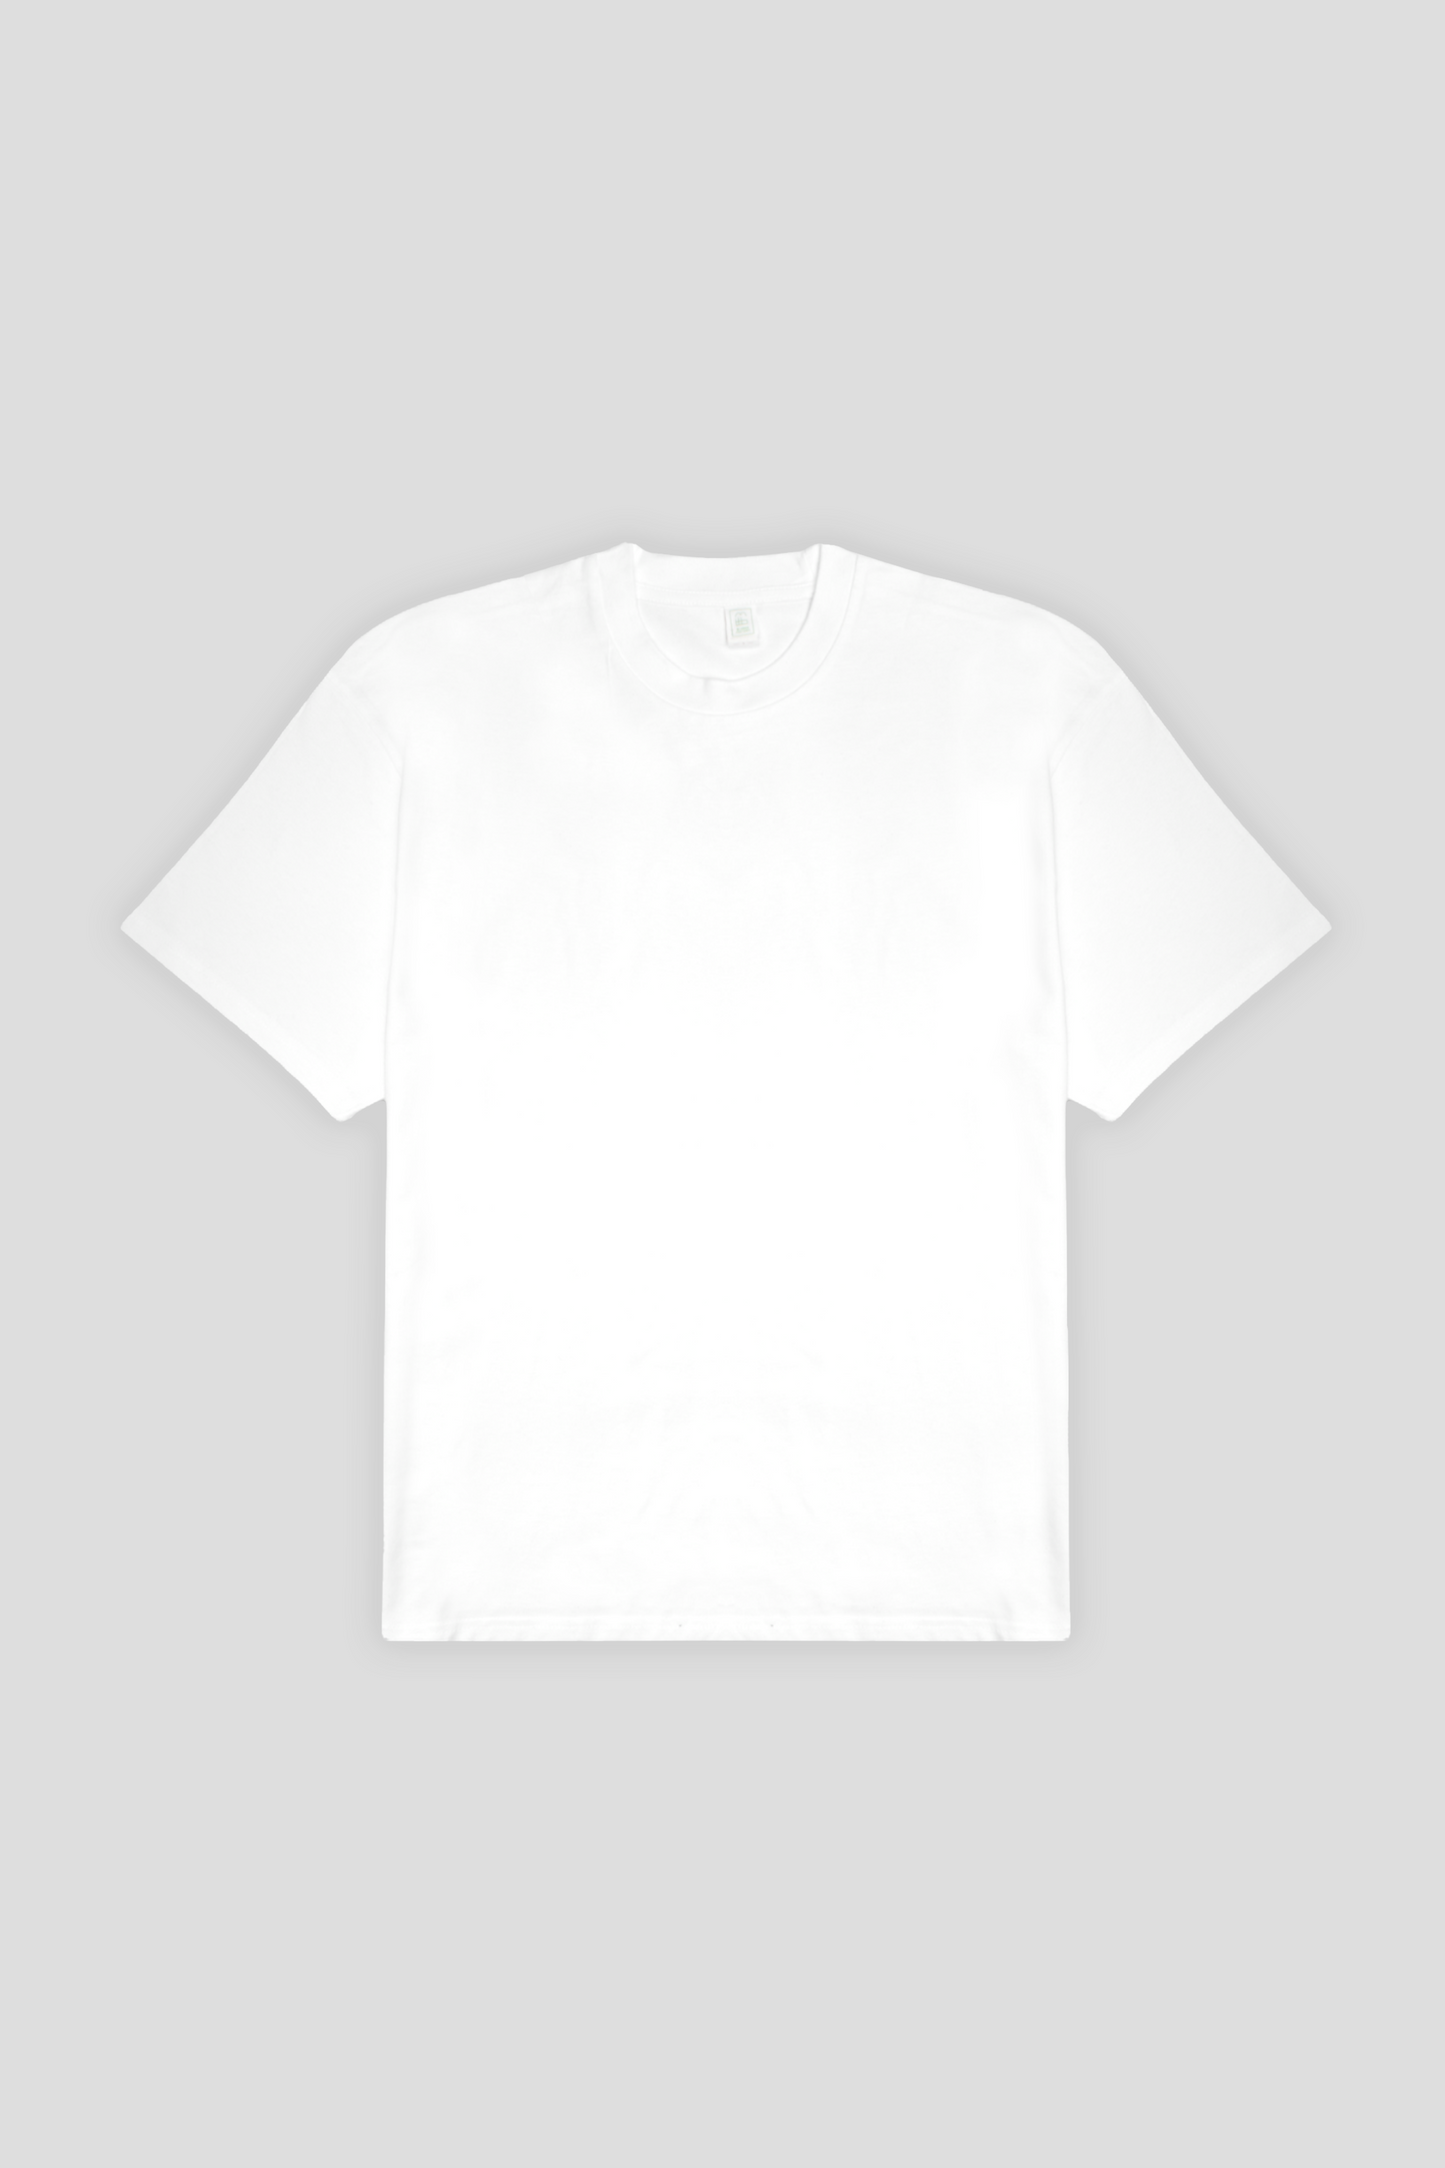 Stateside T-shirt 3-pack White